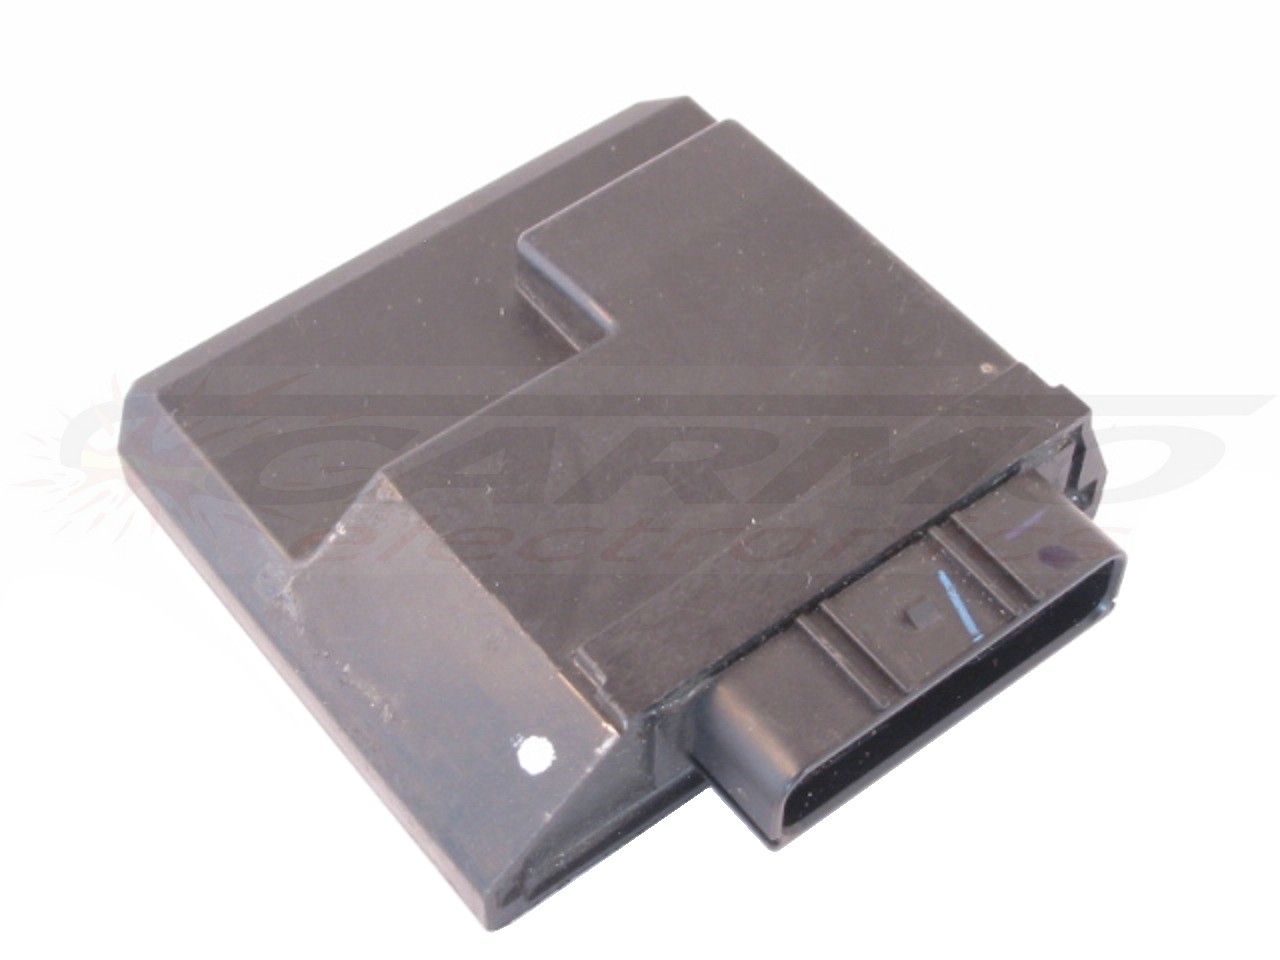 RMZ250 RMZ 250 RM-Z250 CDI dispositif de commande boîte noire (32920-49H01, 32920-49H20, 32920-49H30)